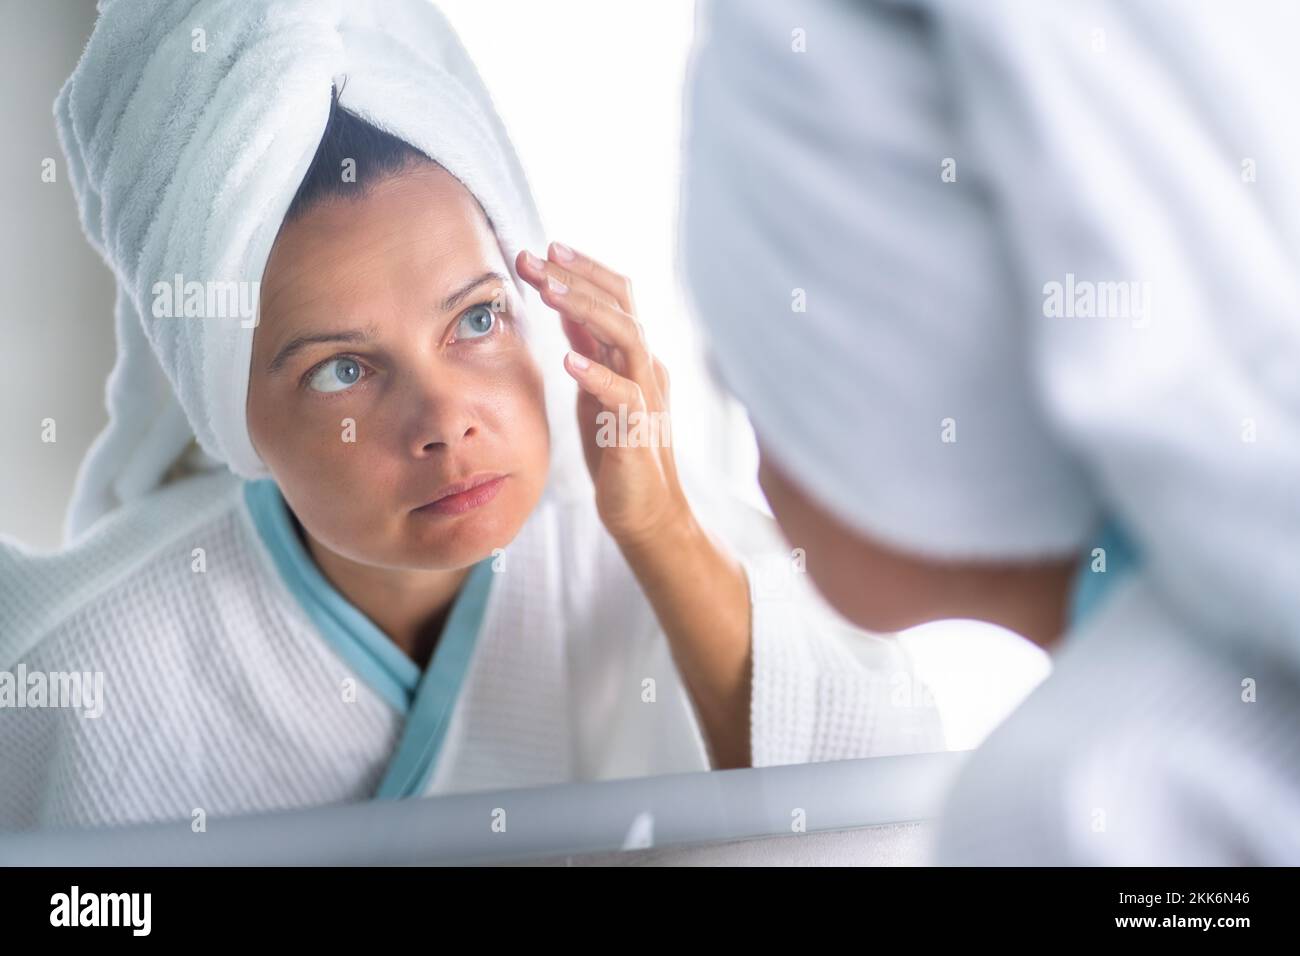 Femme appuyant le bouton sur son visage. Problème de peau d'acné Banque D'Images